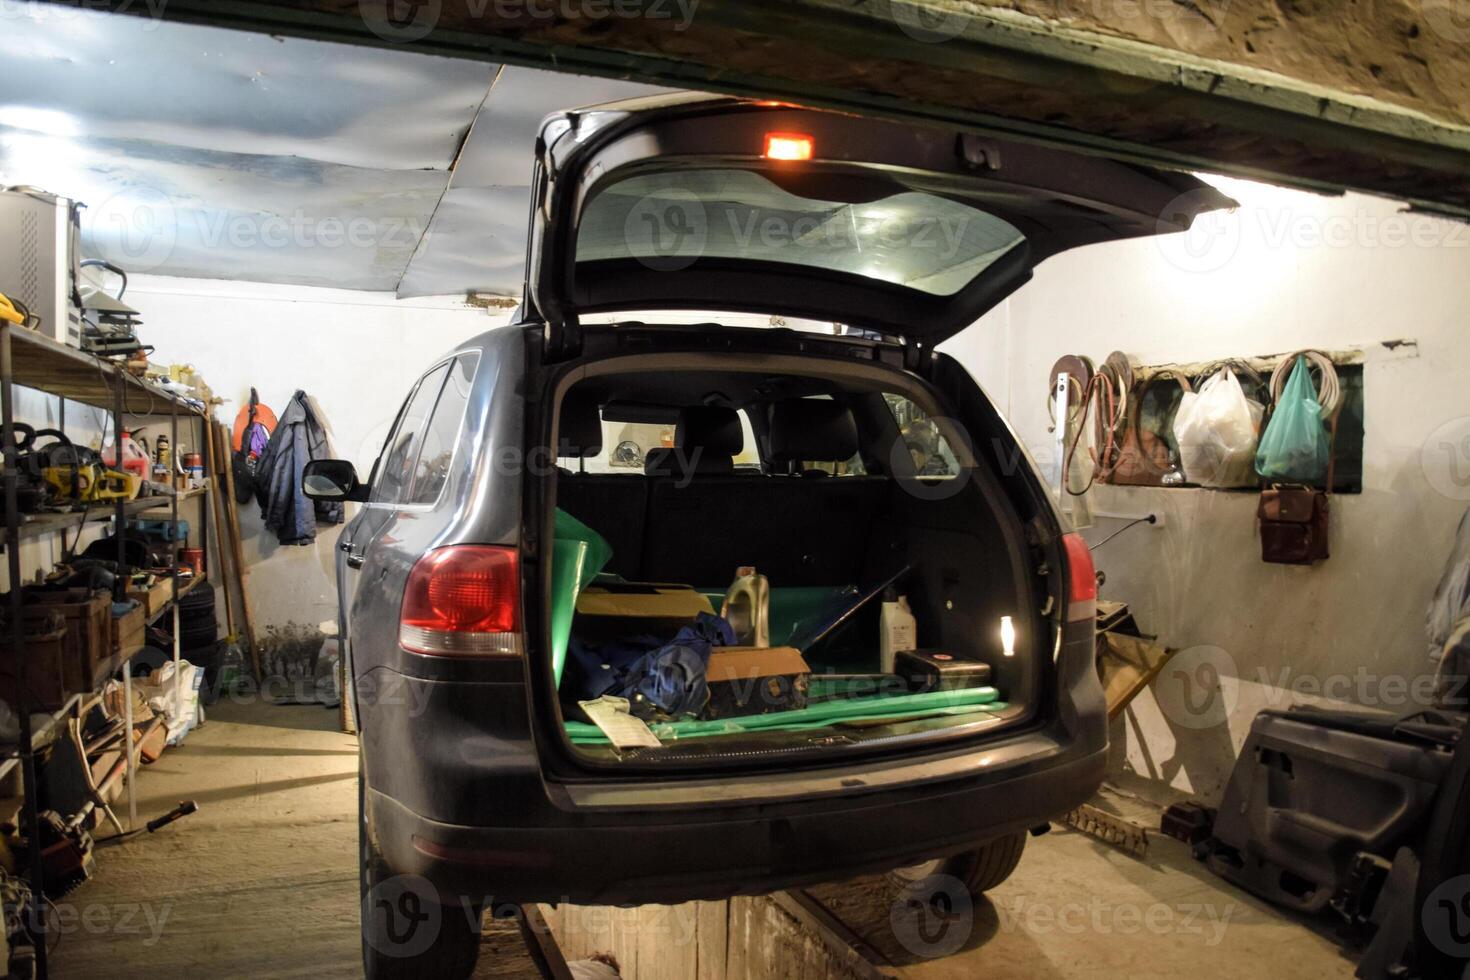 de volkswagen auto is in de garage met een Open kofferbak. foto